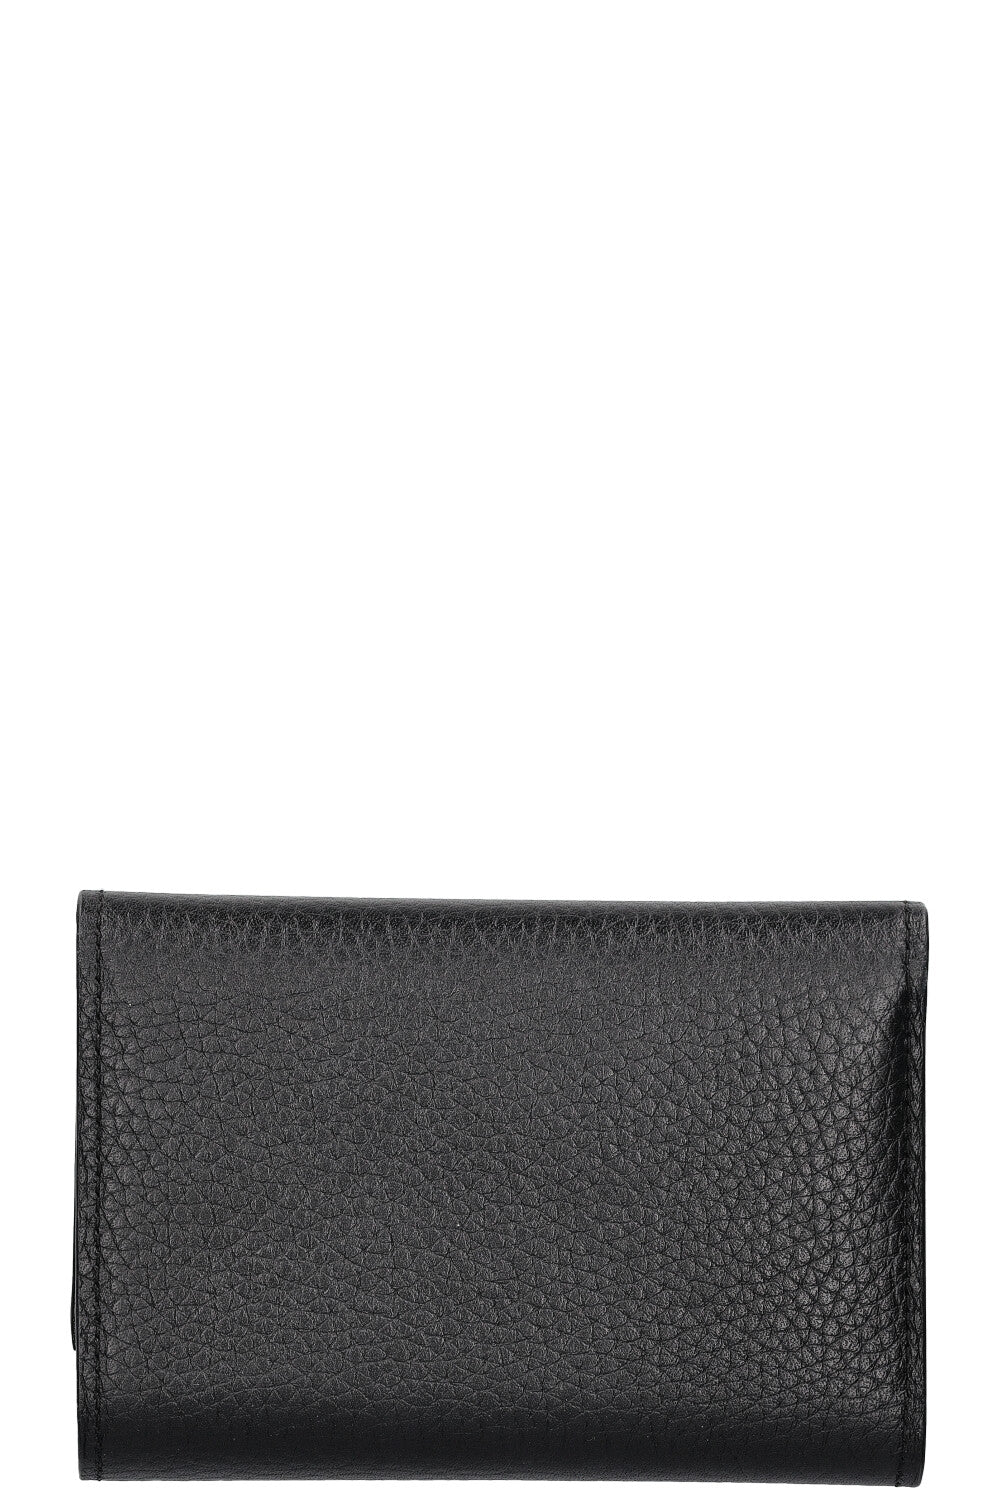 LOUIS VUITTON Capucines Compact Wallet Studs Black